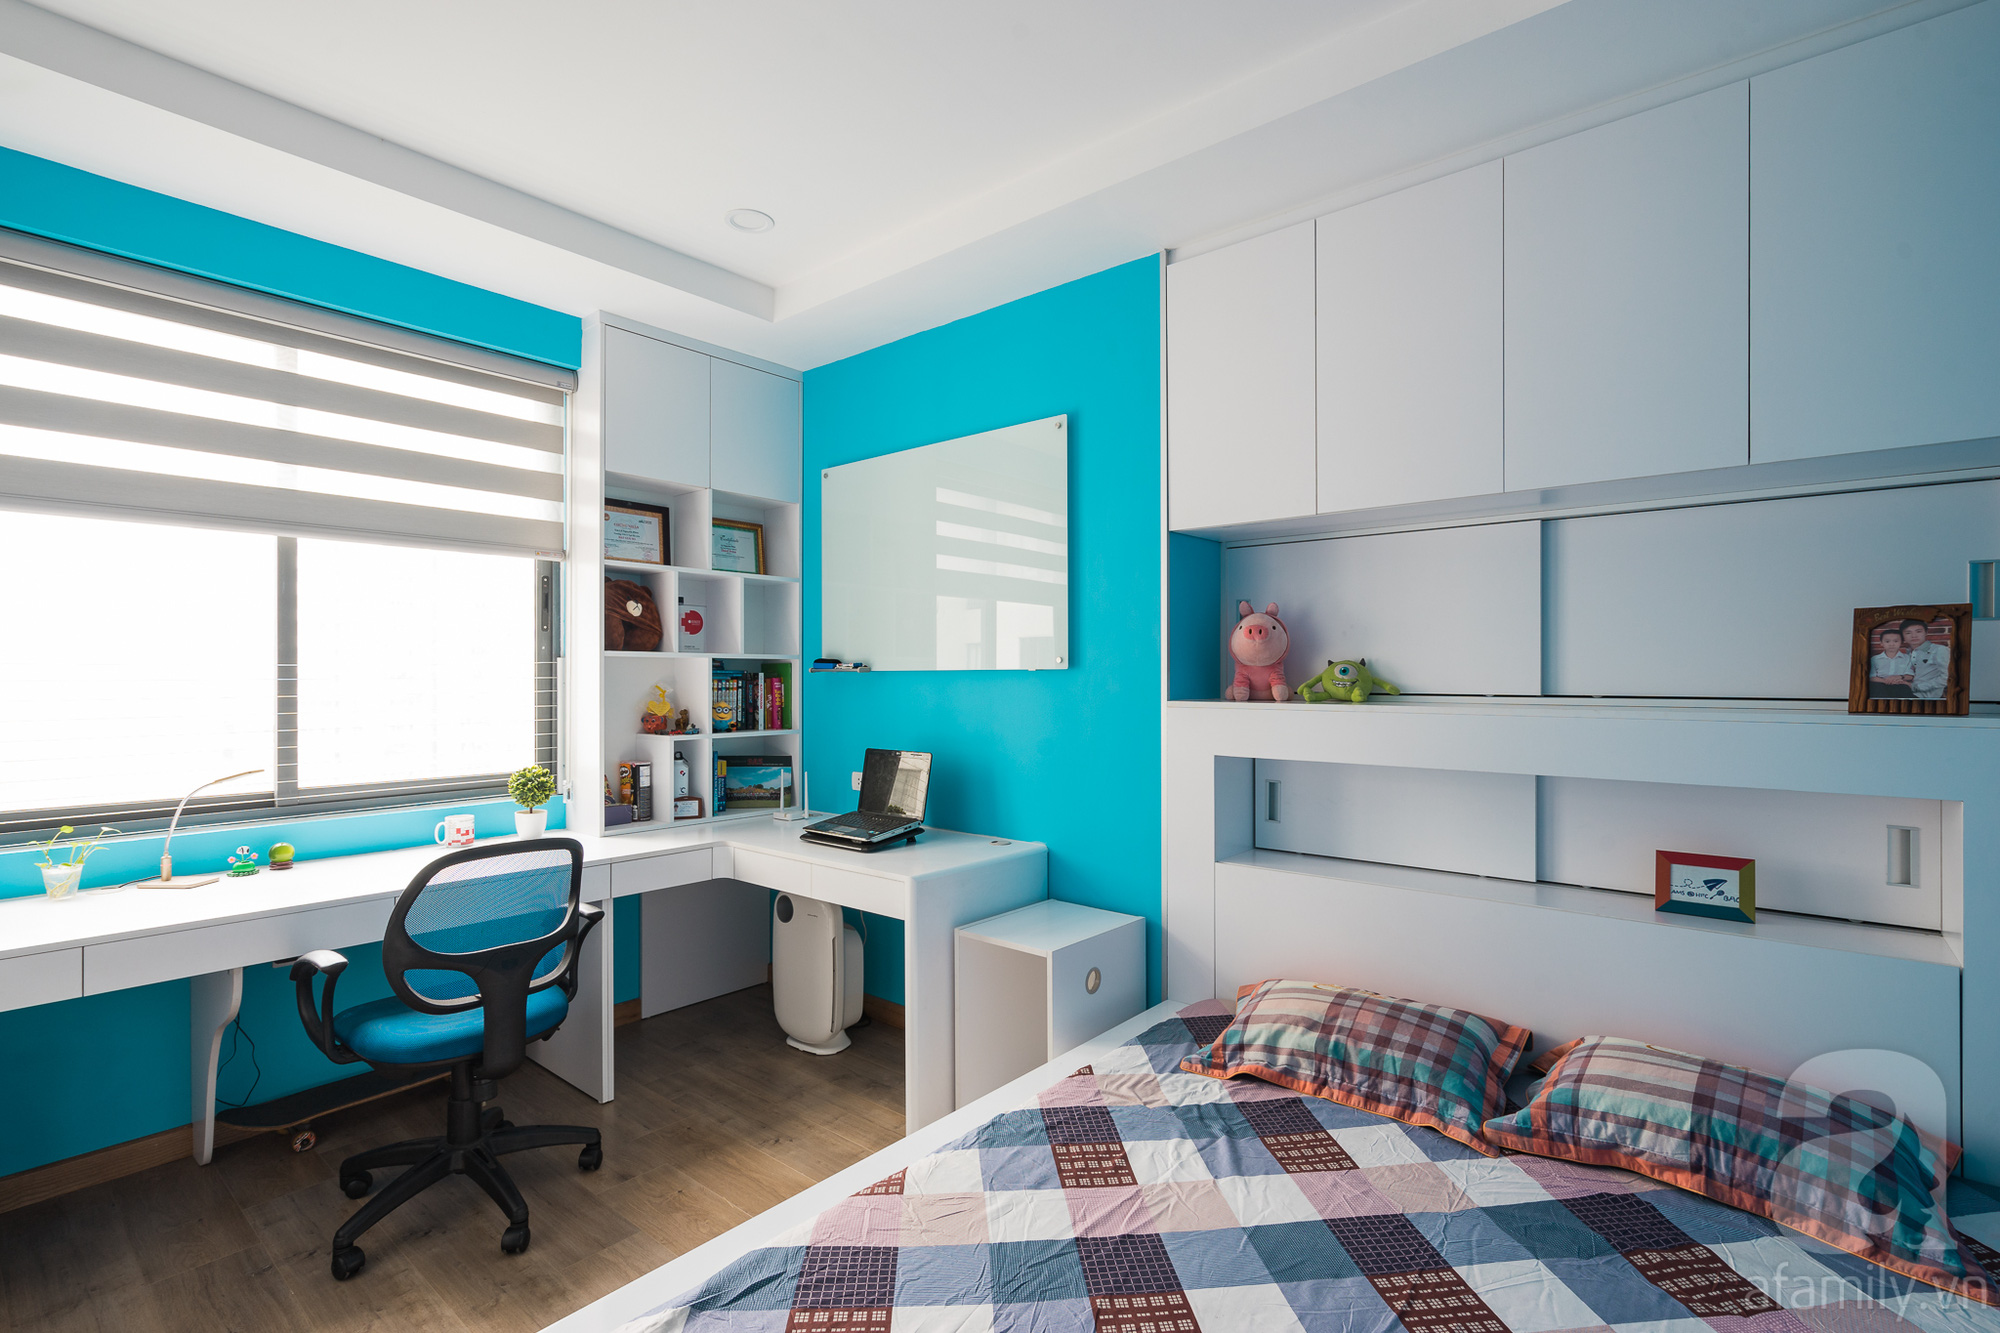 Tư vấn thiết kế căn hộ 110m2 với 3 phòng ngủ tiện nghi ở chung cư Ecolife, Tây Hồ với chi phí hoàn thiện nội thất 290 triệu - Ảnh 22.